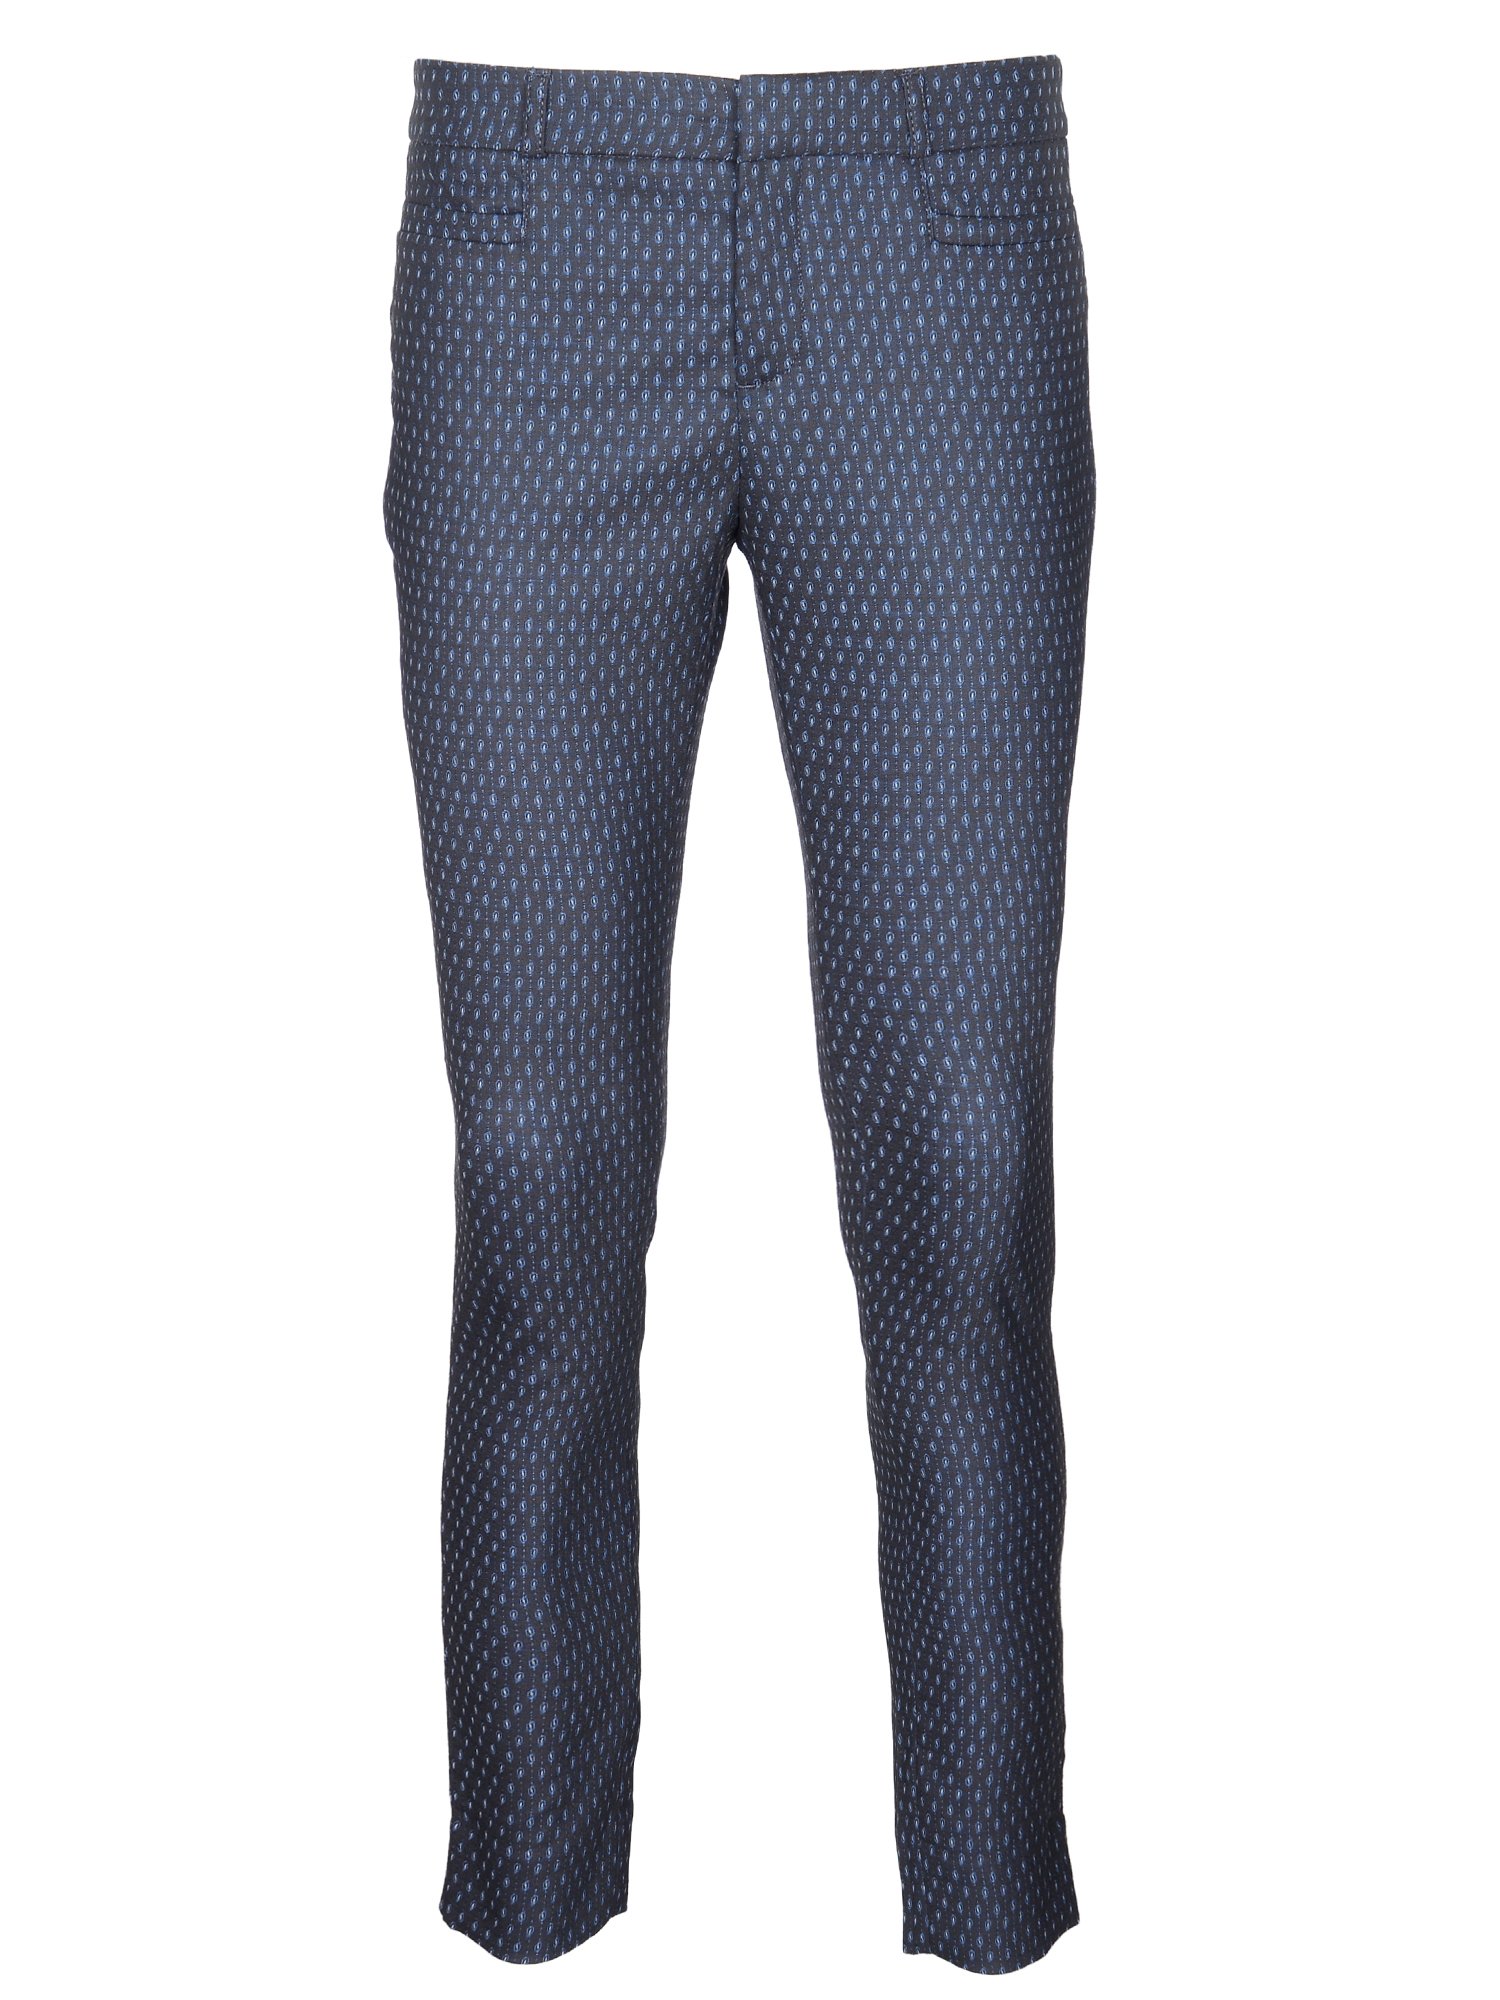 Sloan Fit Desenli Pantolon product image